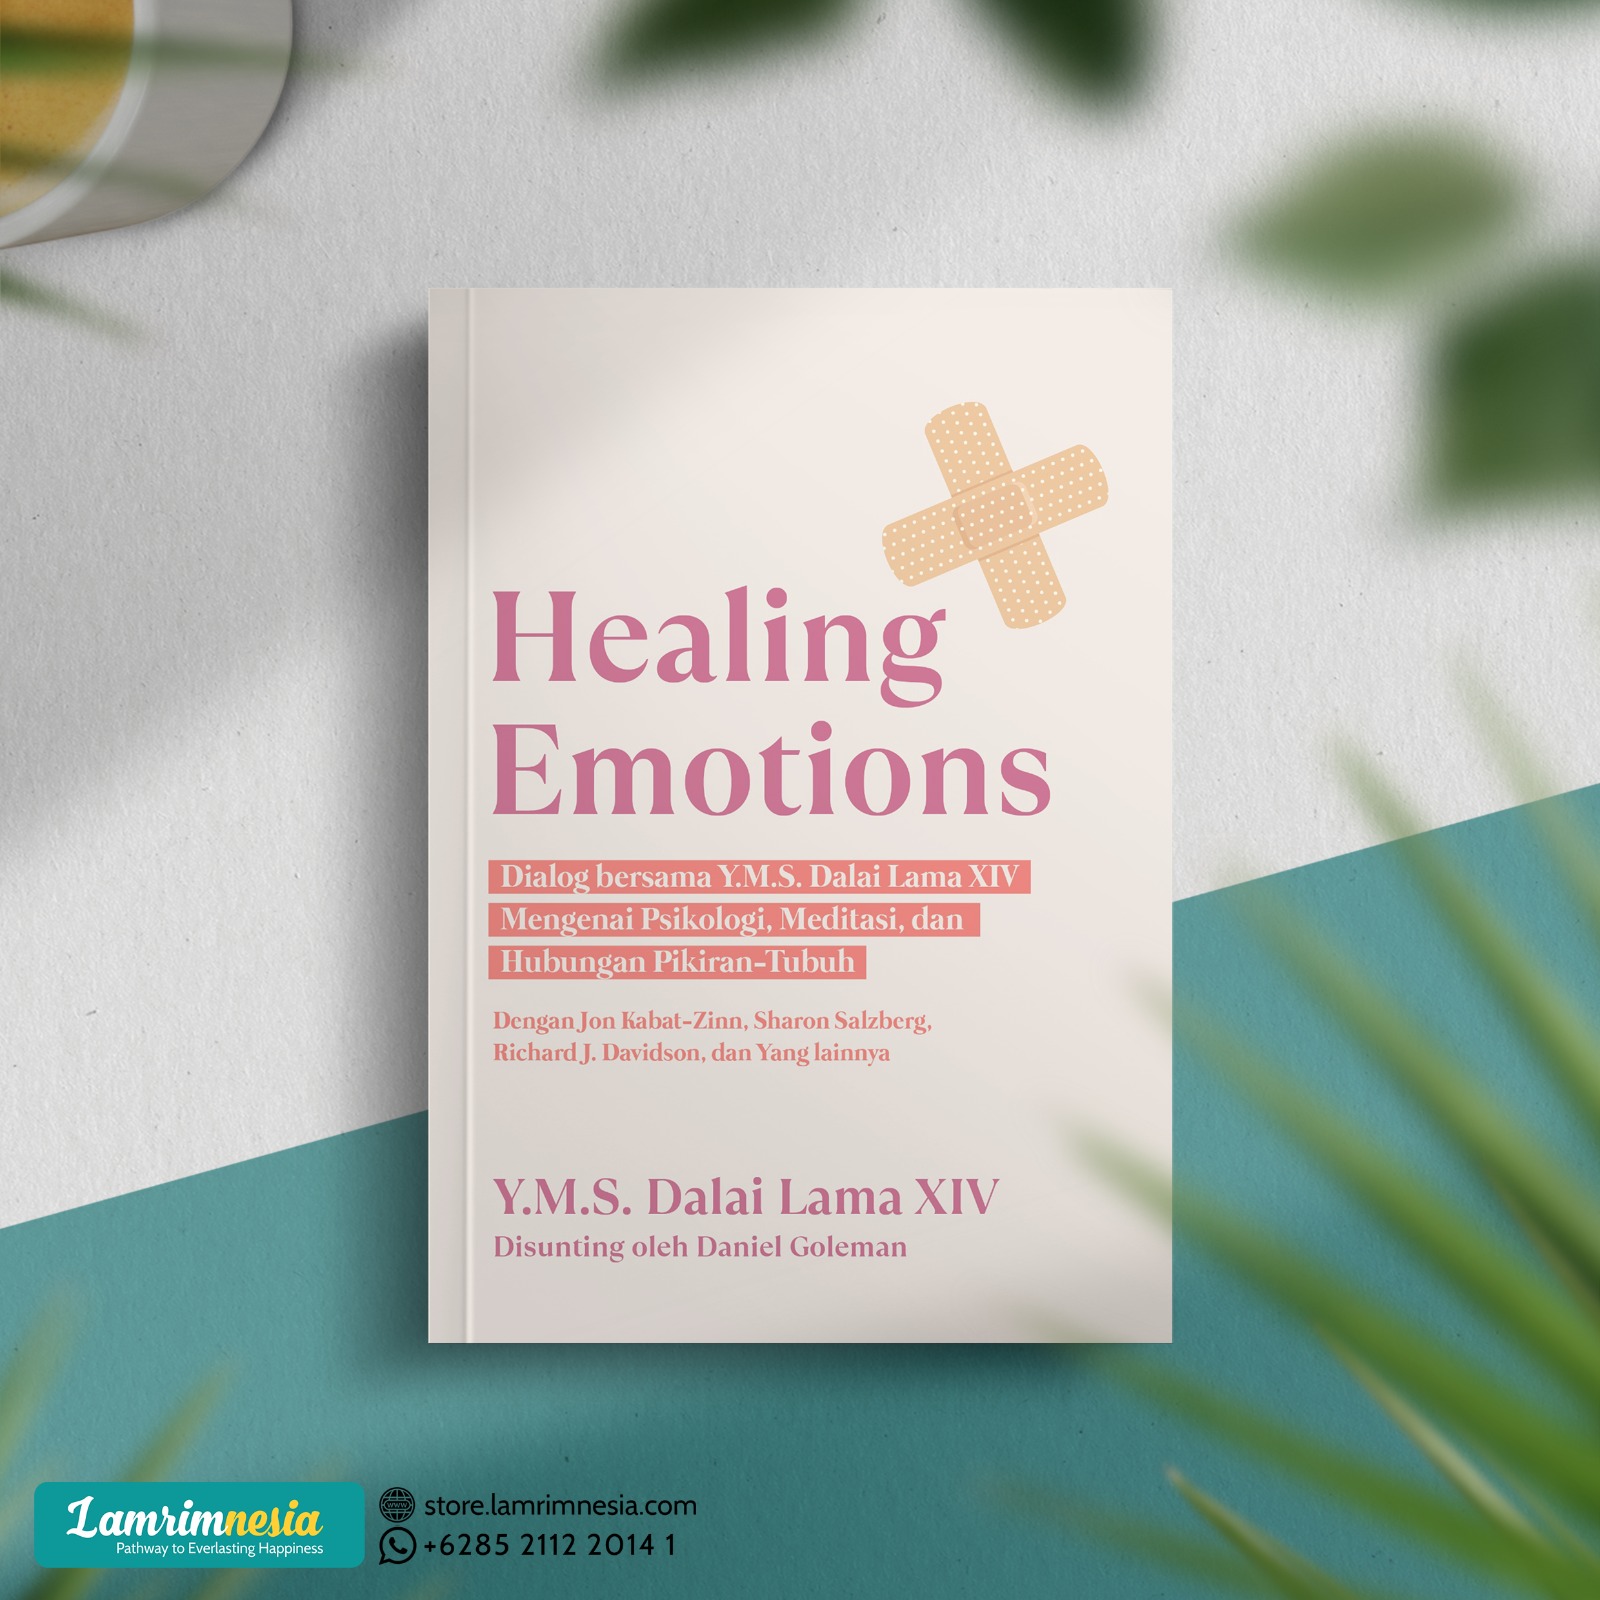 Healing Emotion